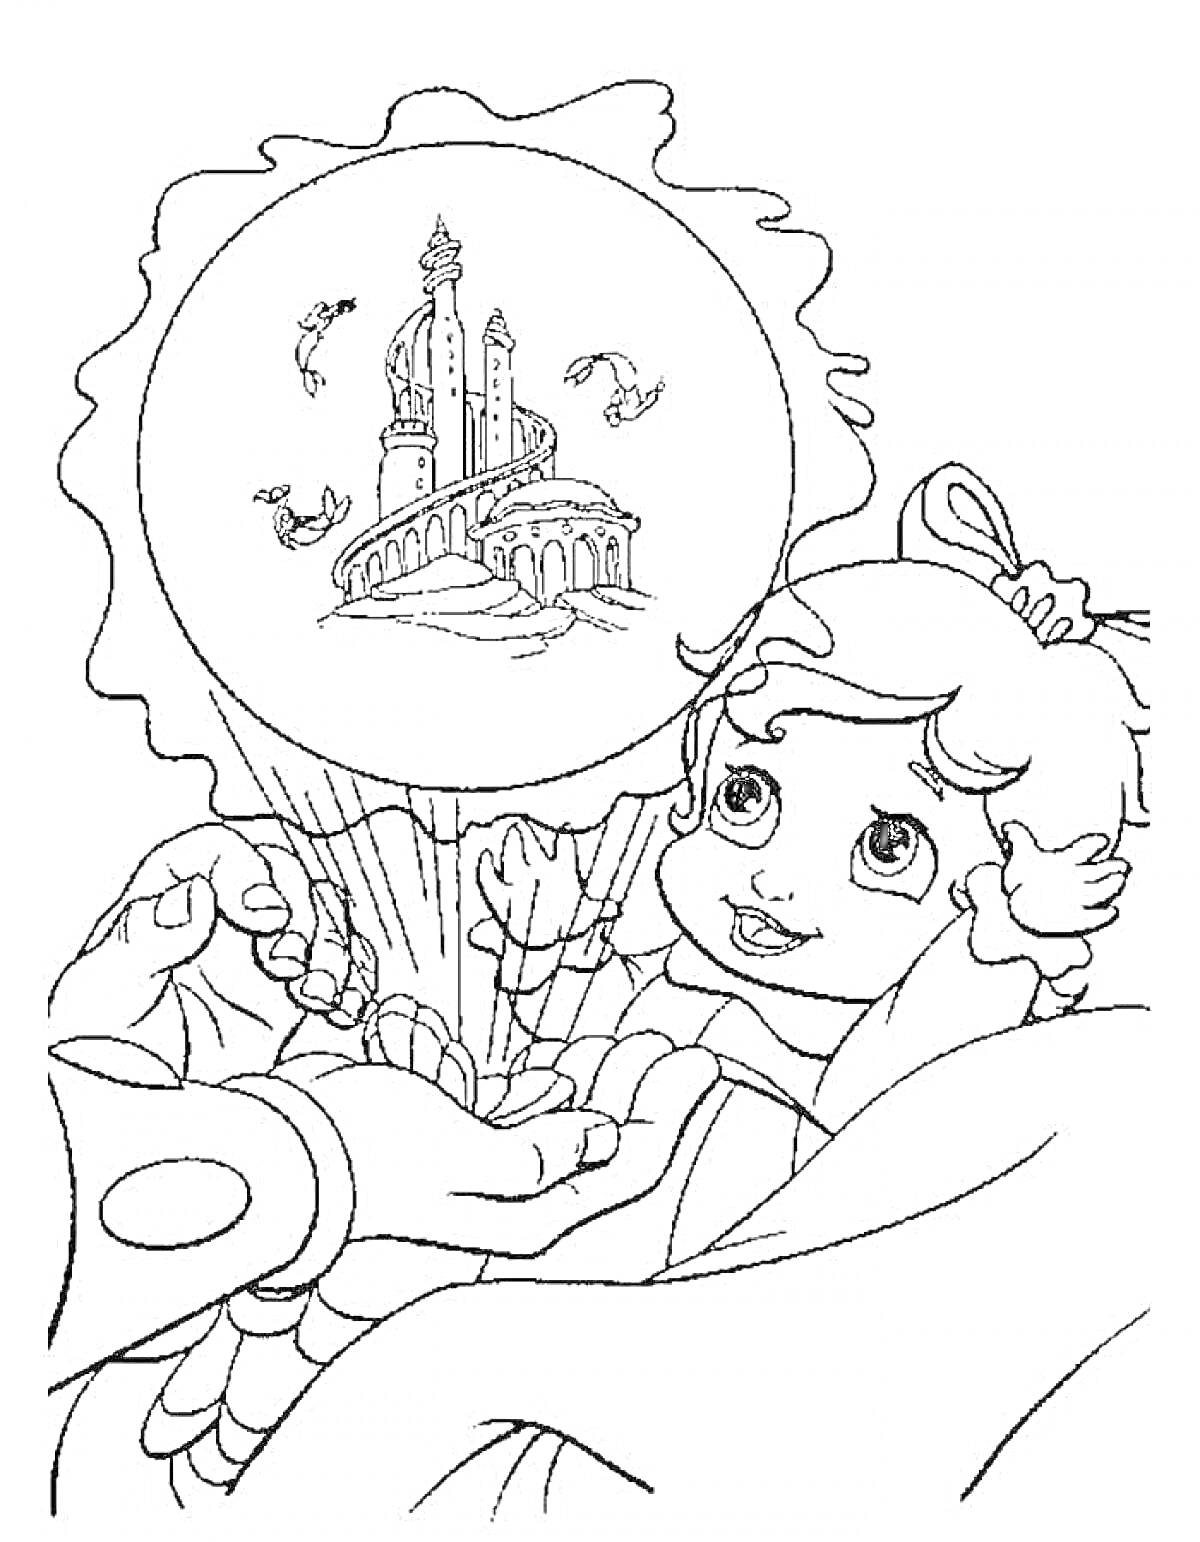 Девочка, мечтающая о замке в шаре